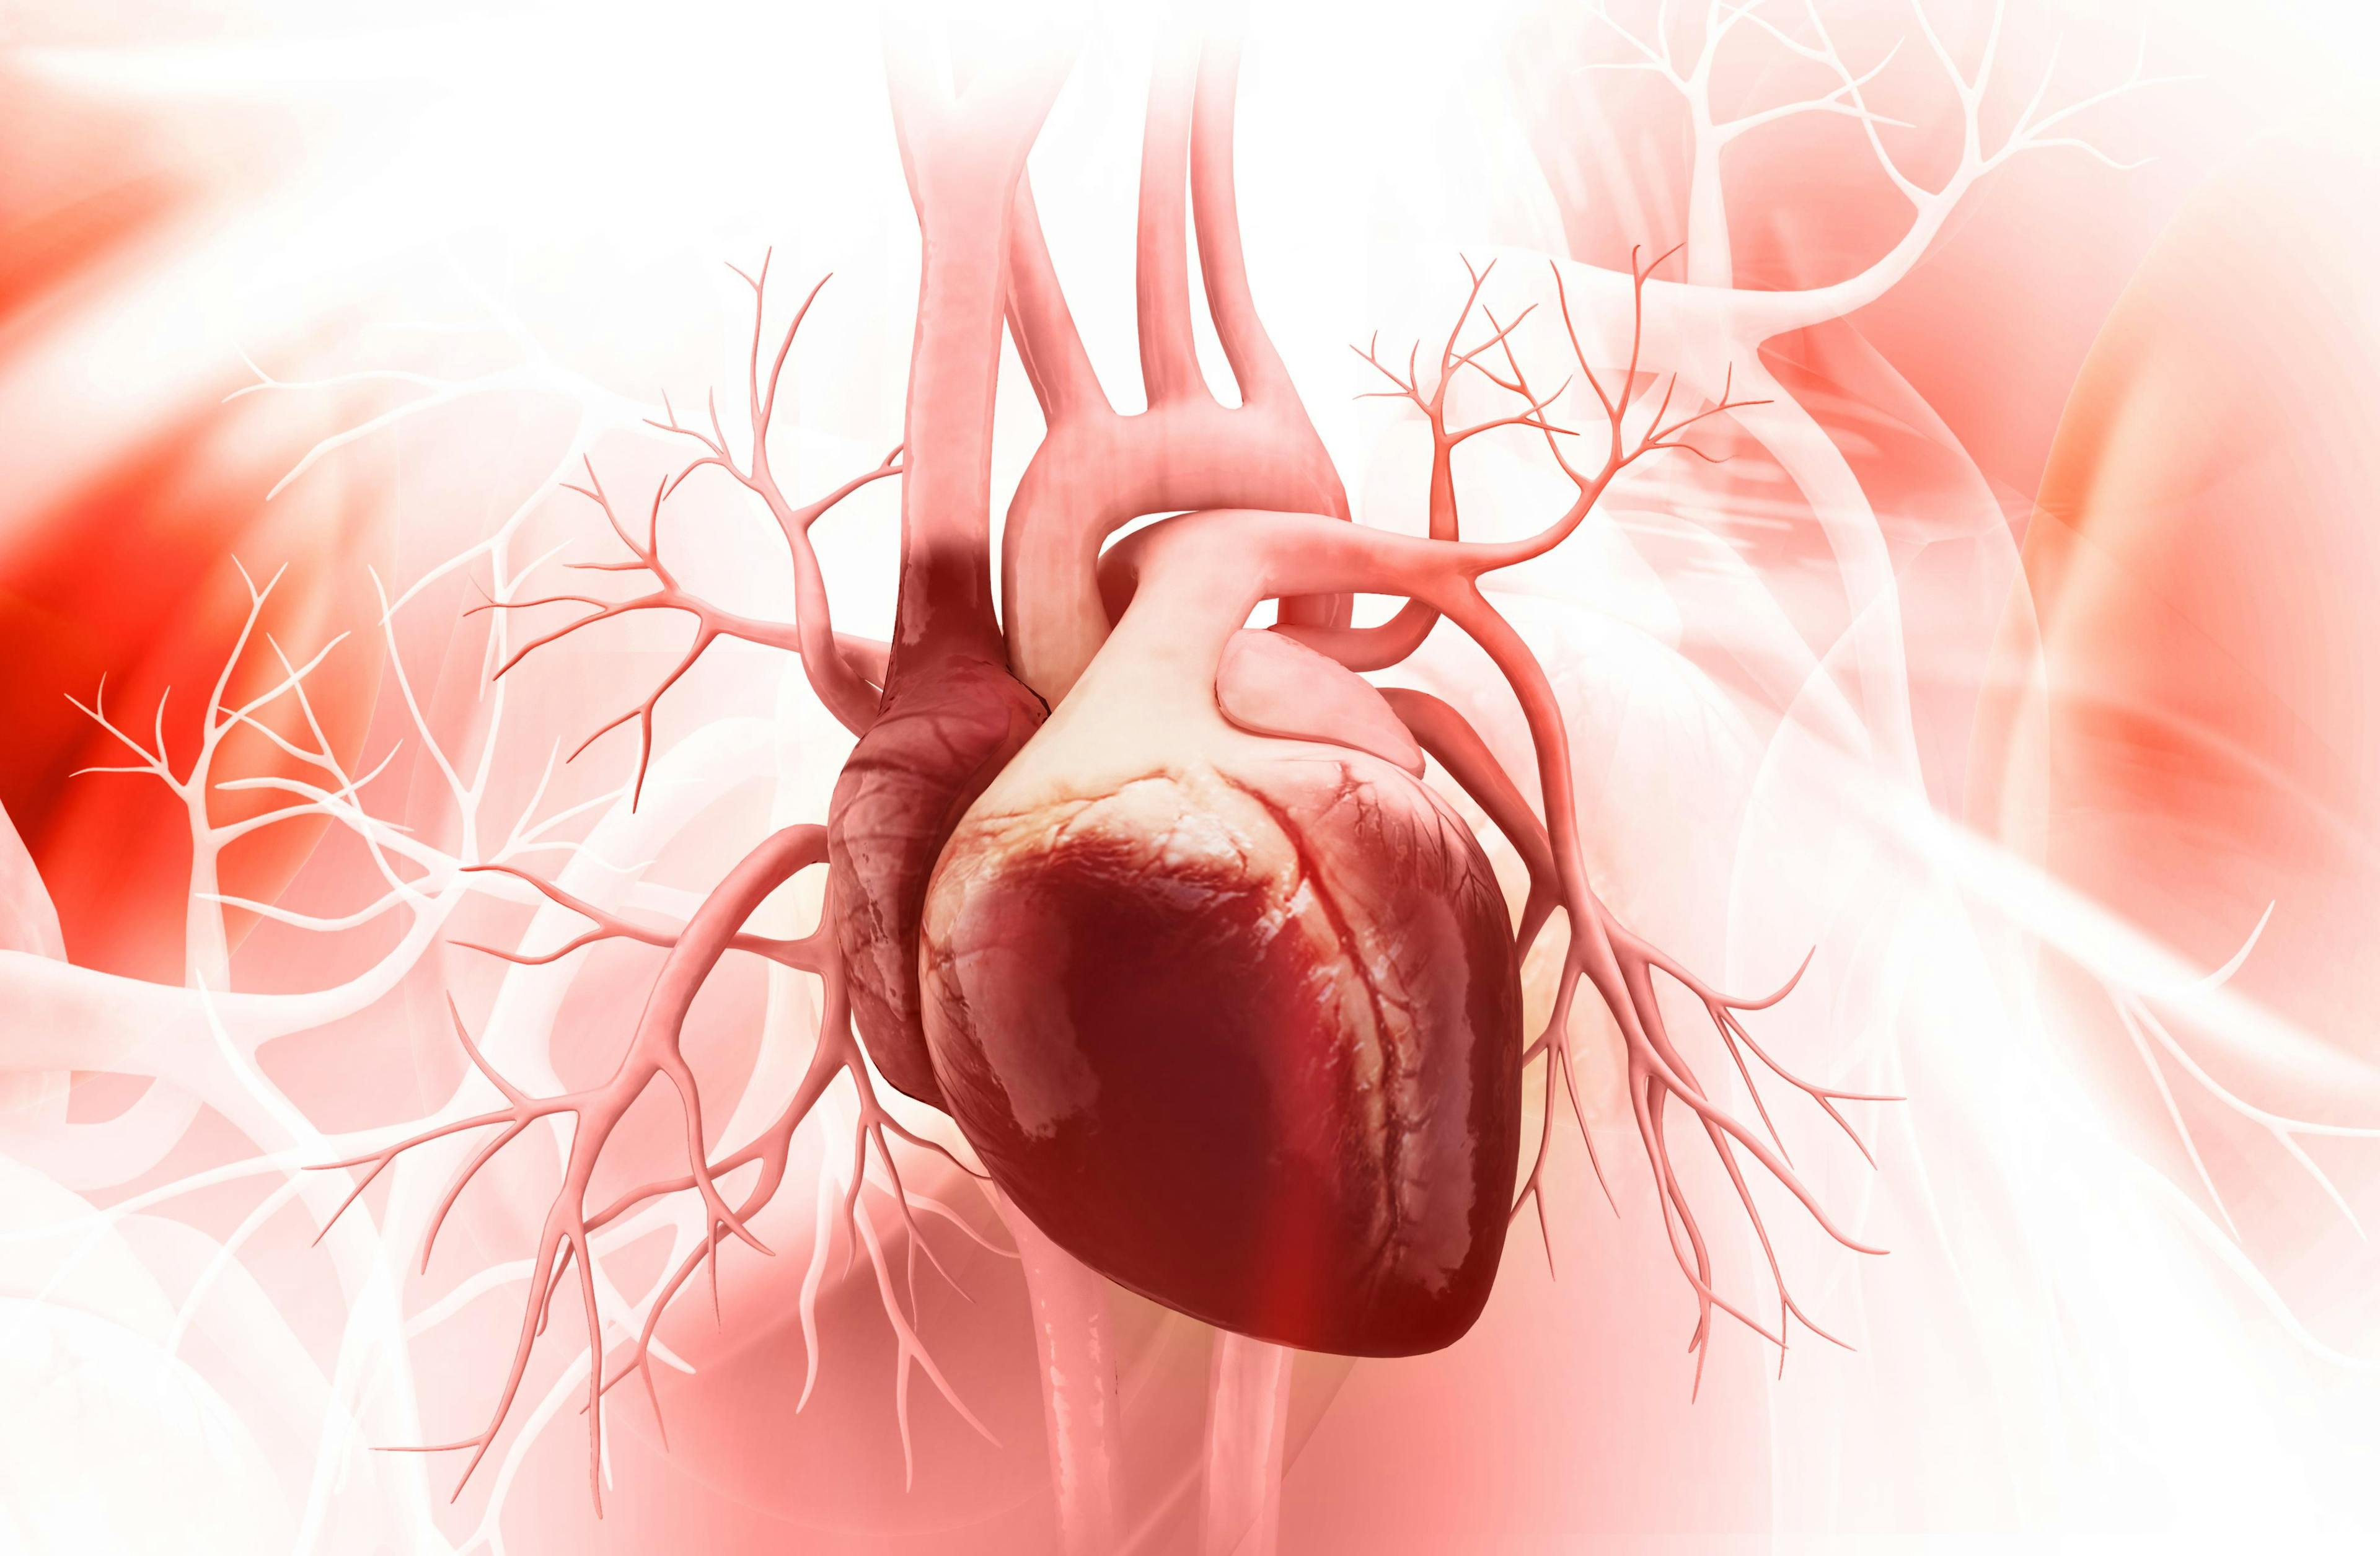 Digital illustration of a heart.